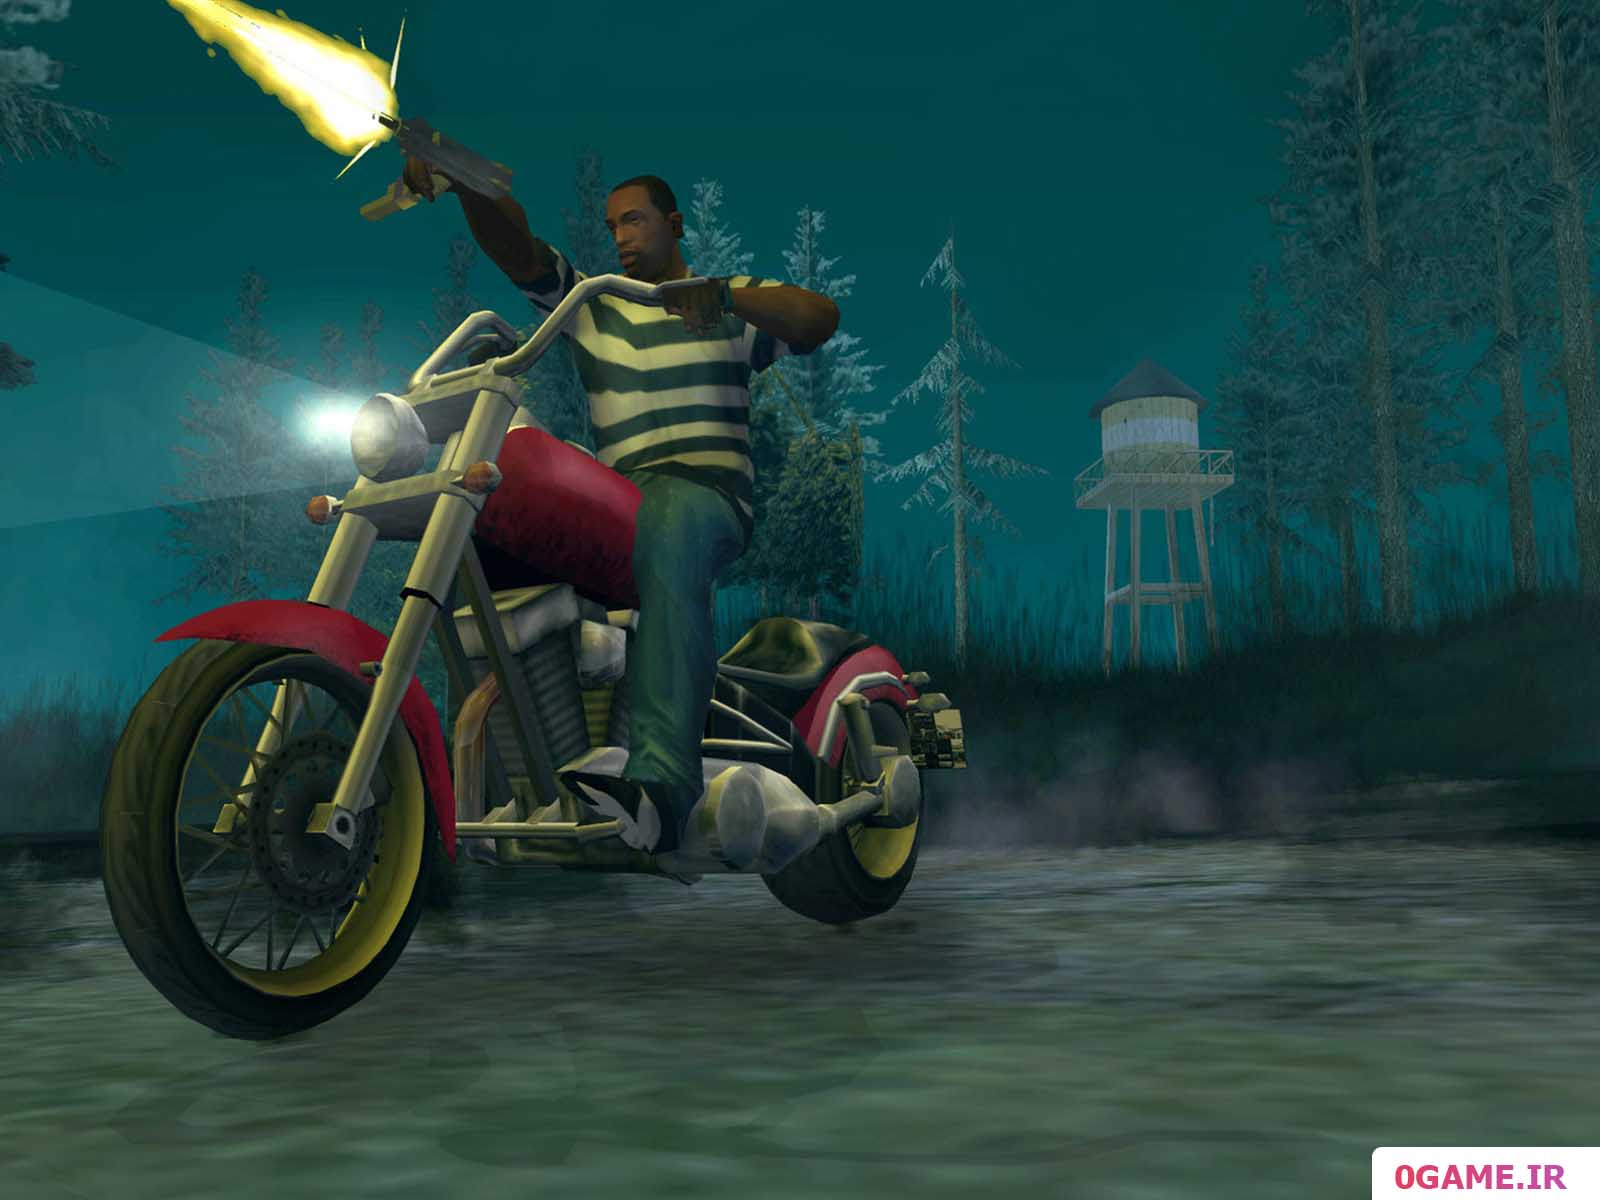 دانلود بازي  (Grand Theft Auto: San Andreas) نسخه کامل براي کامپيوتر